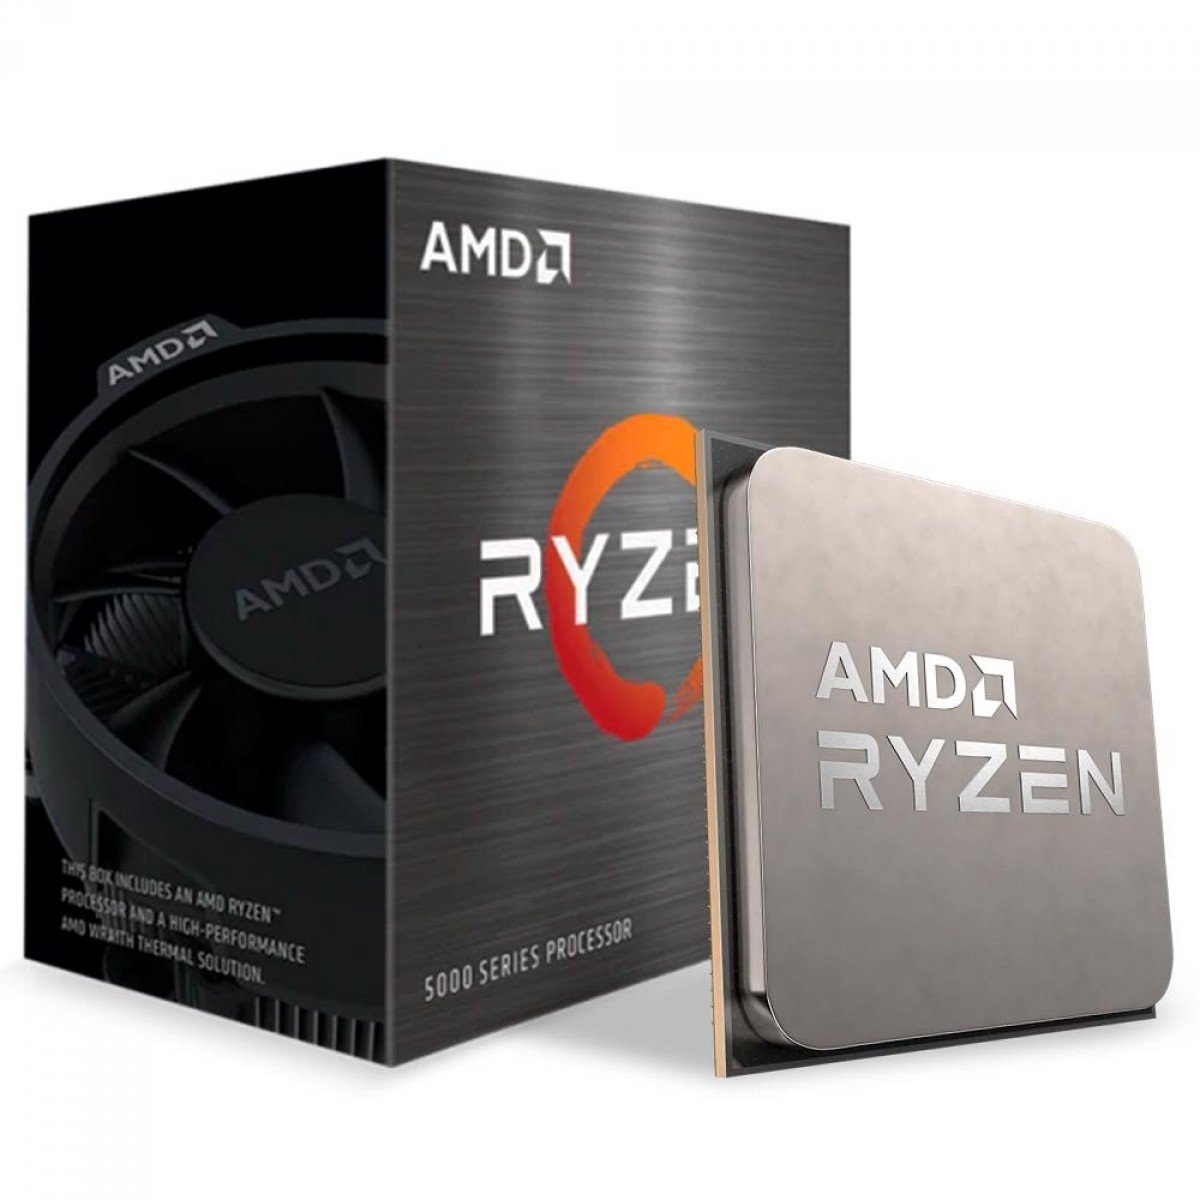 6周年記念イベントが AMD CPU Ryzen 2400G with Wraith Stealth cooler YD2400C5FBBOX 